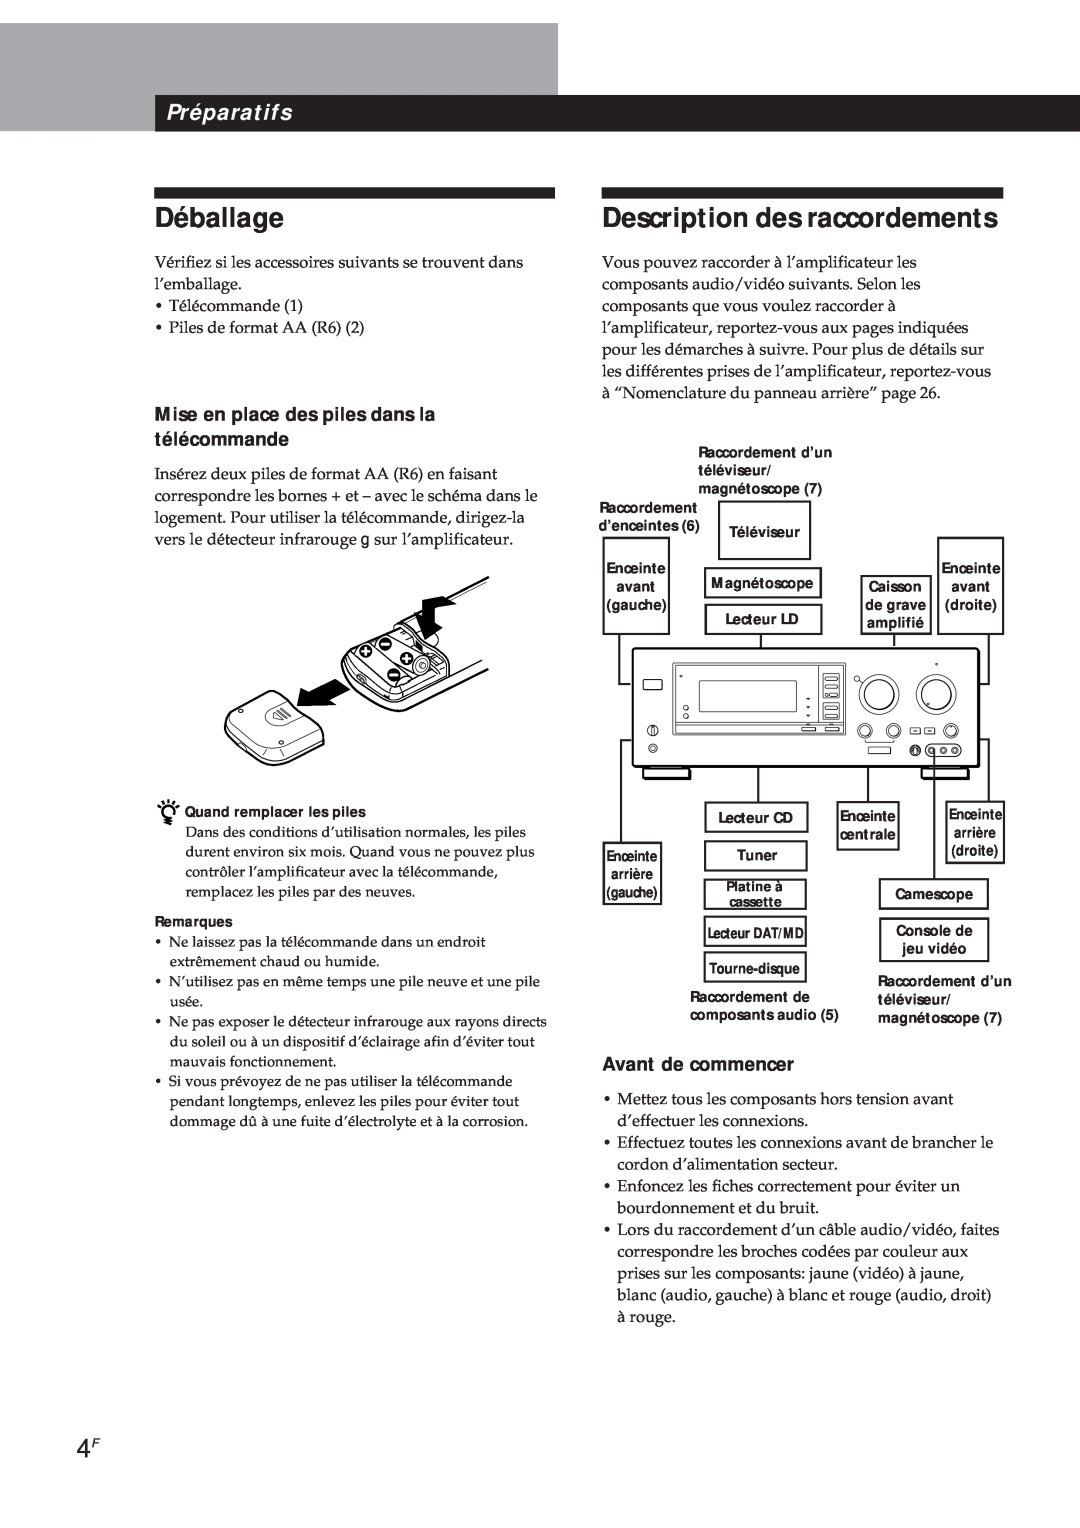 Sony TA-VA8ES manual Déballage, Description des raccordements, Préparatifs, Mise en place des piles dans la télécommande 